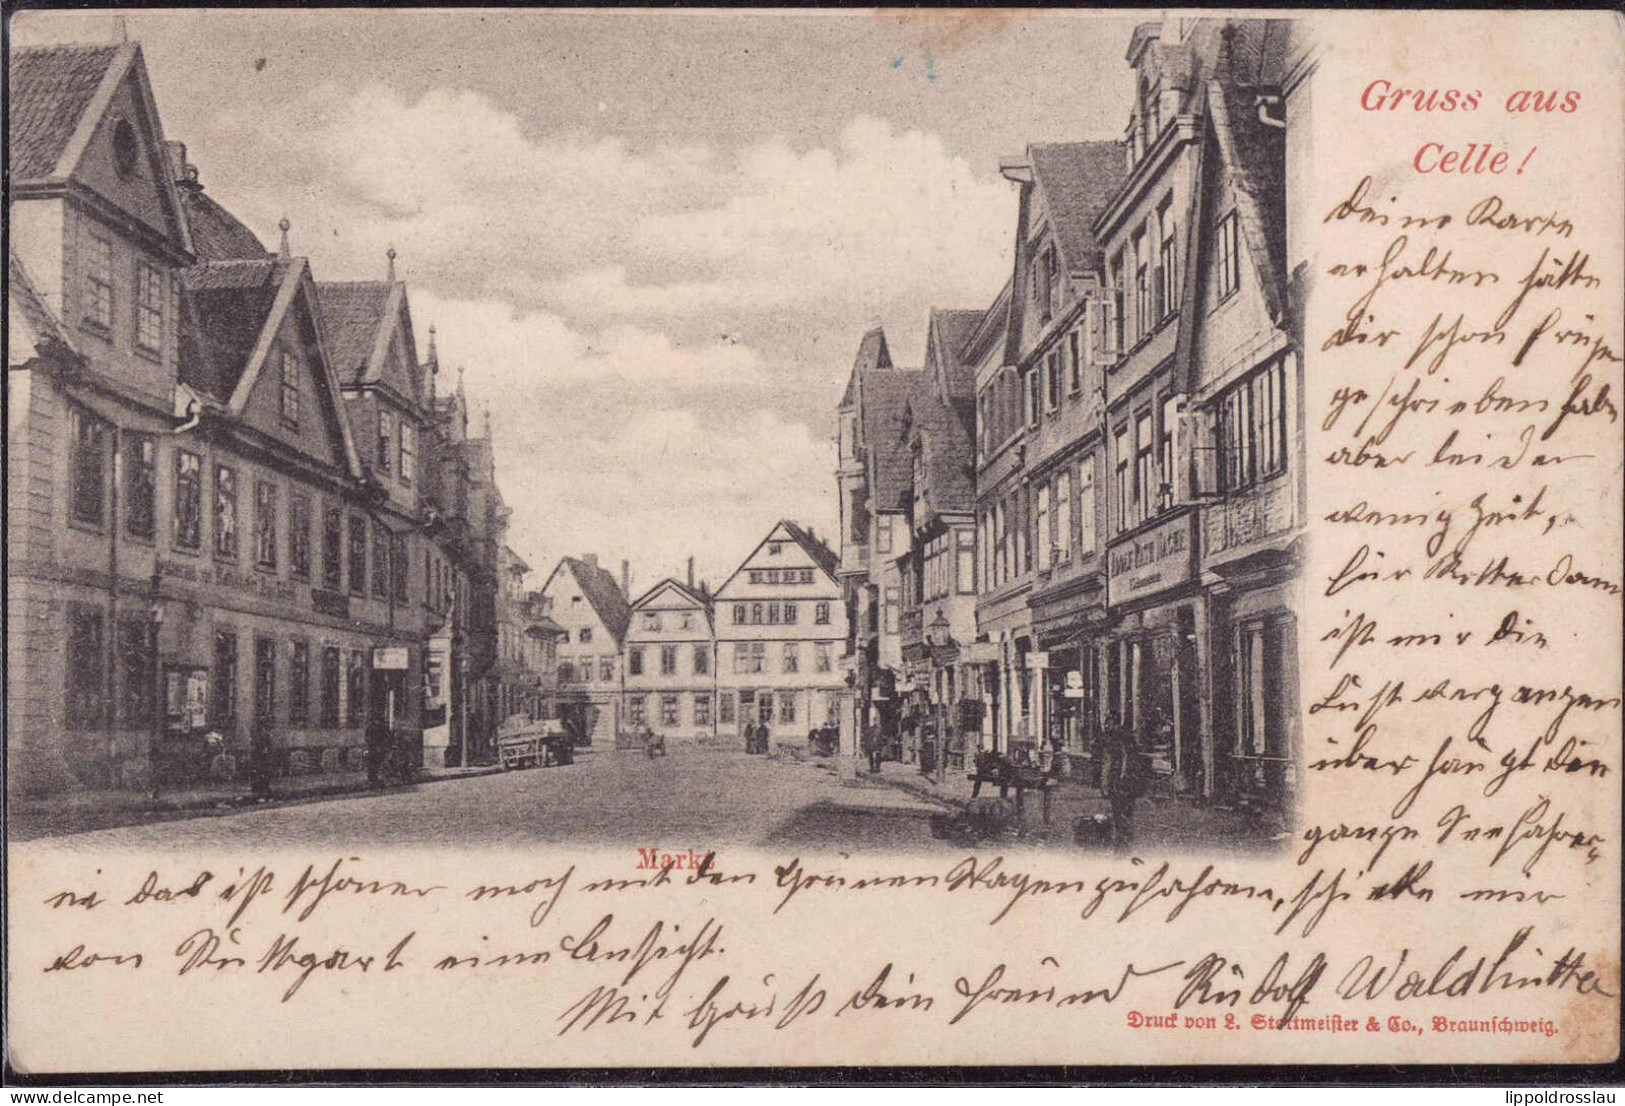 Gest. W-3100 Celle Markt 1903 - Celle